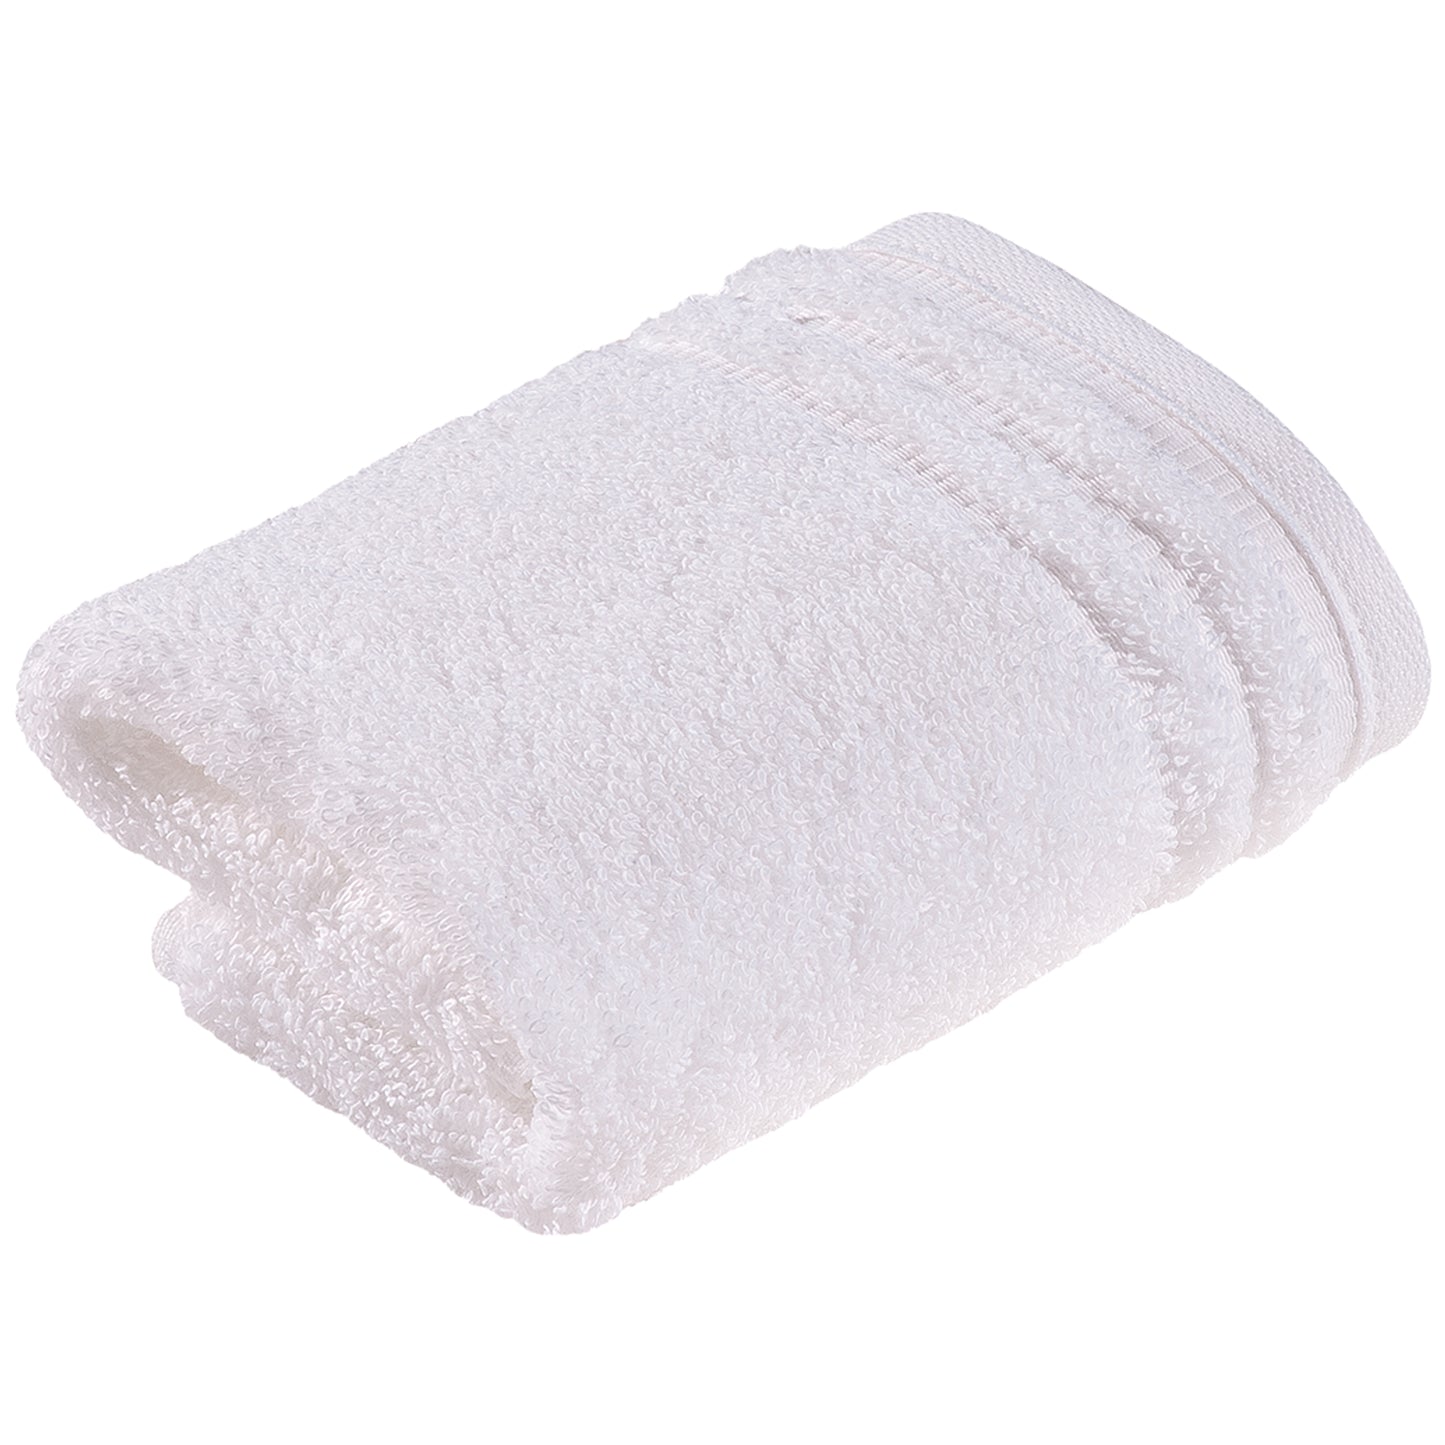 Weißes Handtuch aus Bio-Baumwolle im Wiener Stil 